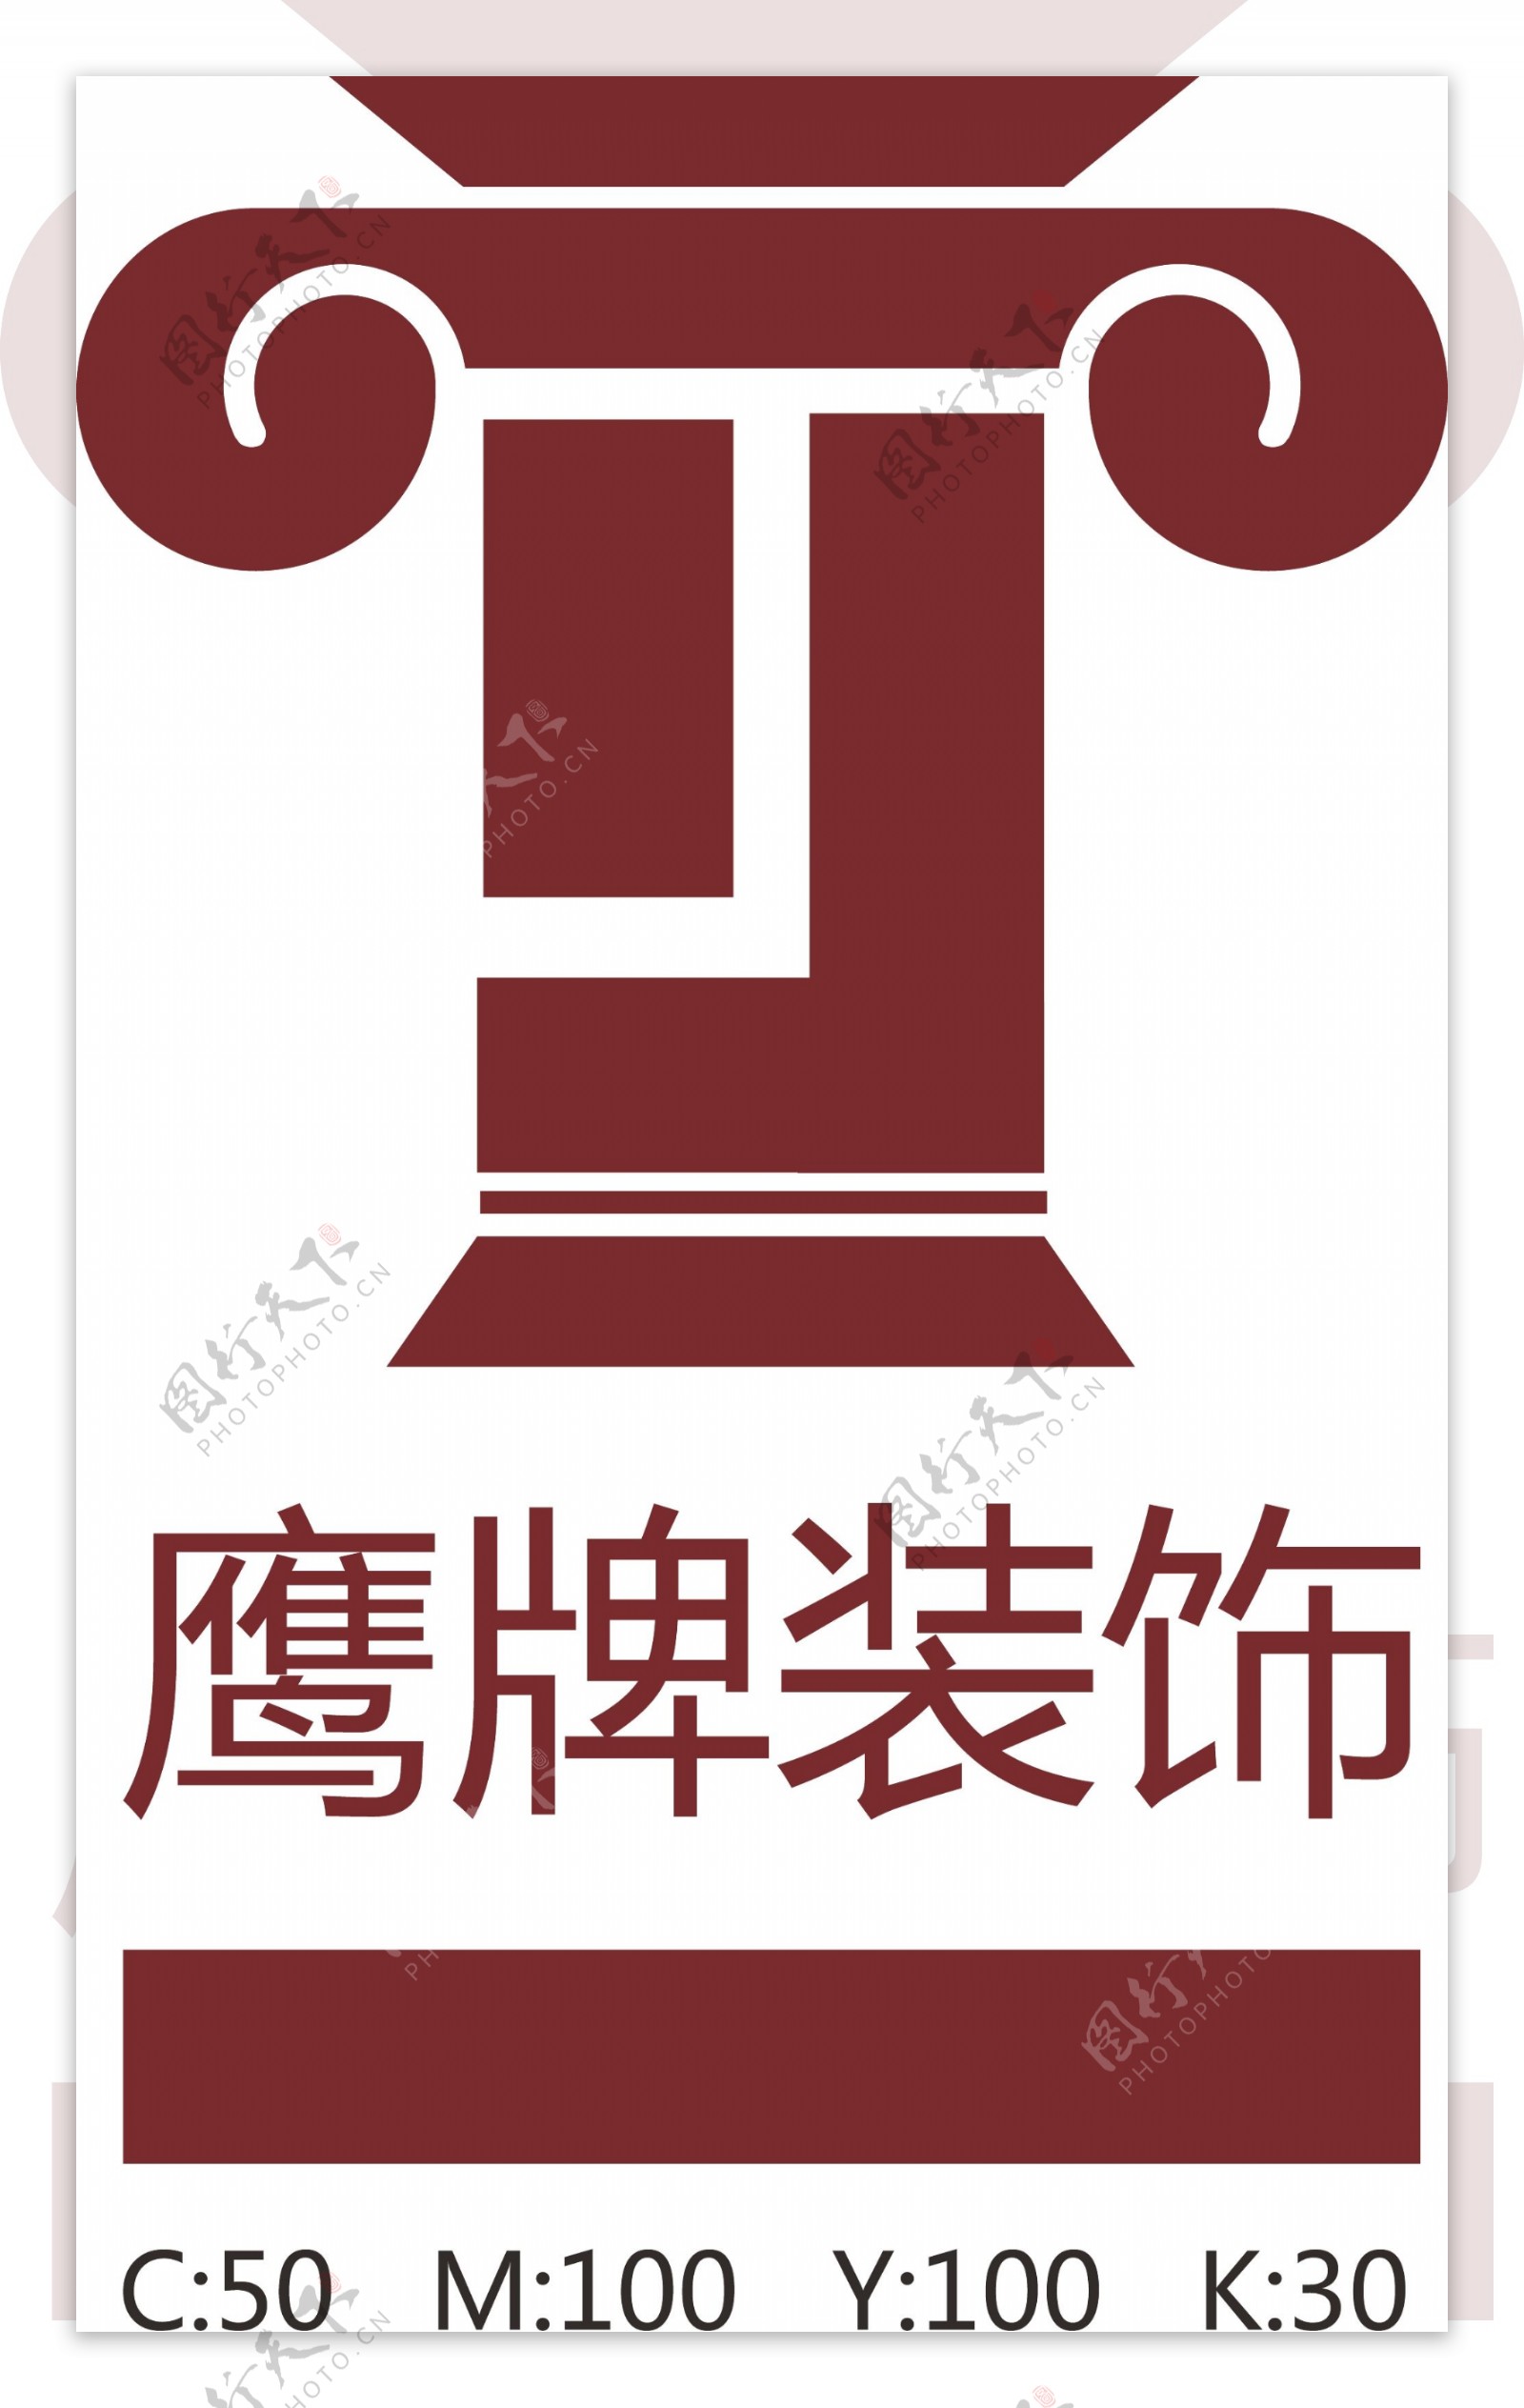 鹰牌装饰logo